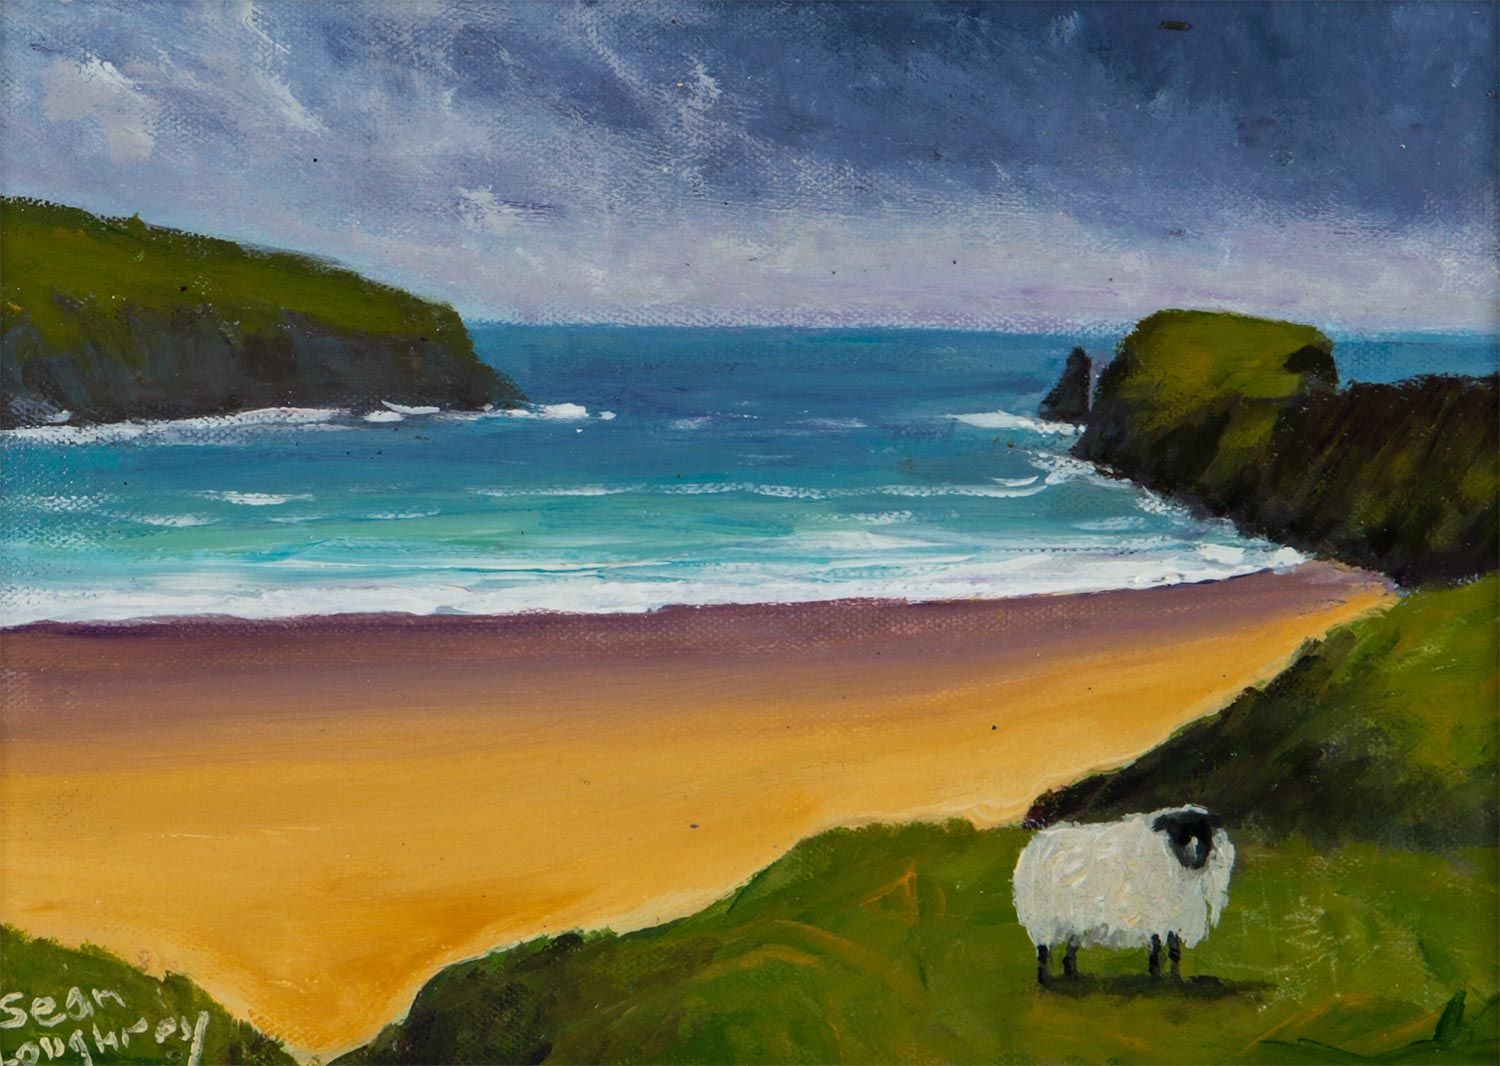 SHEEP AT SILVER BEACH by Sean Loughrey